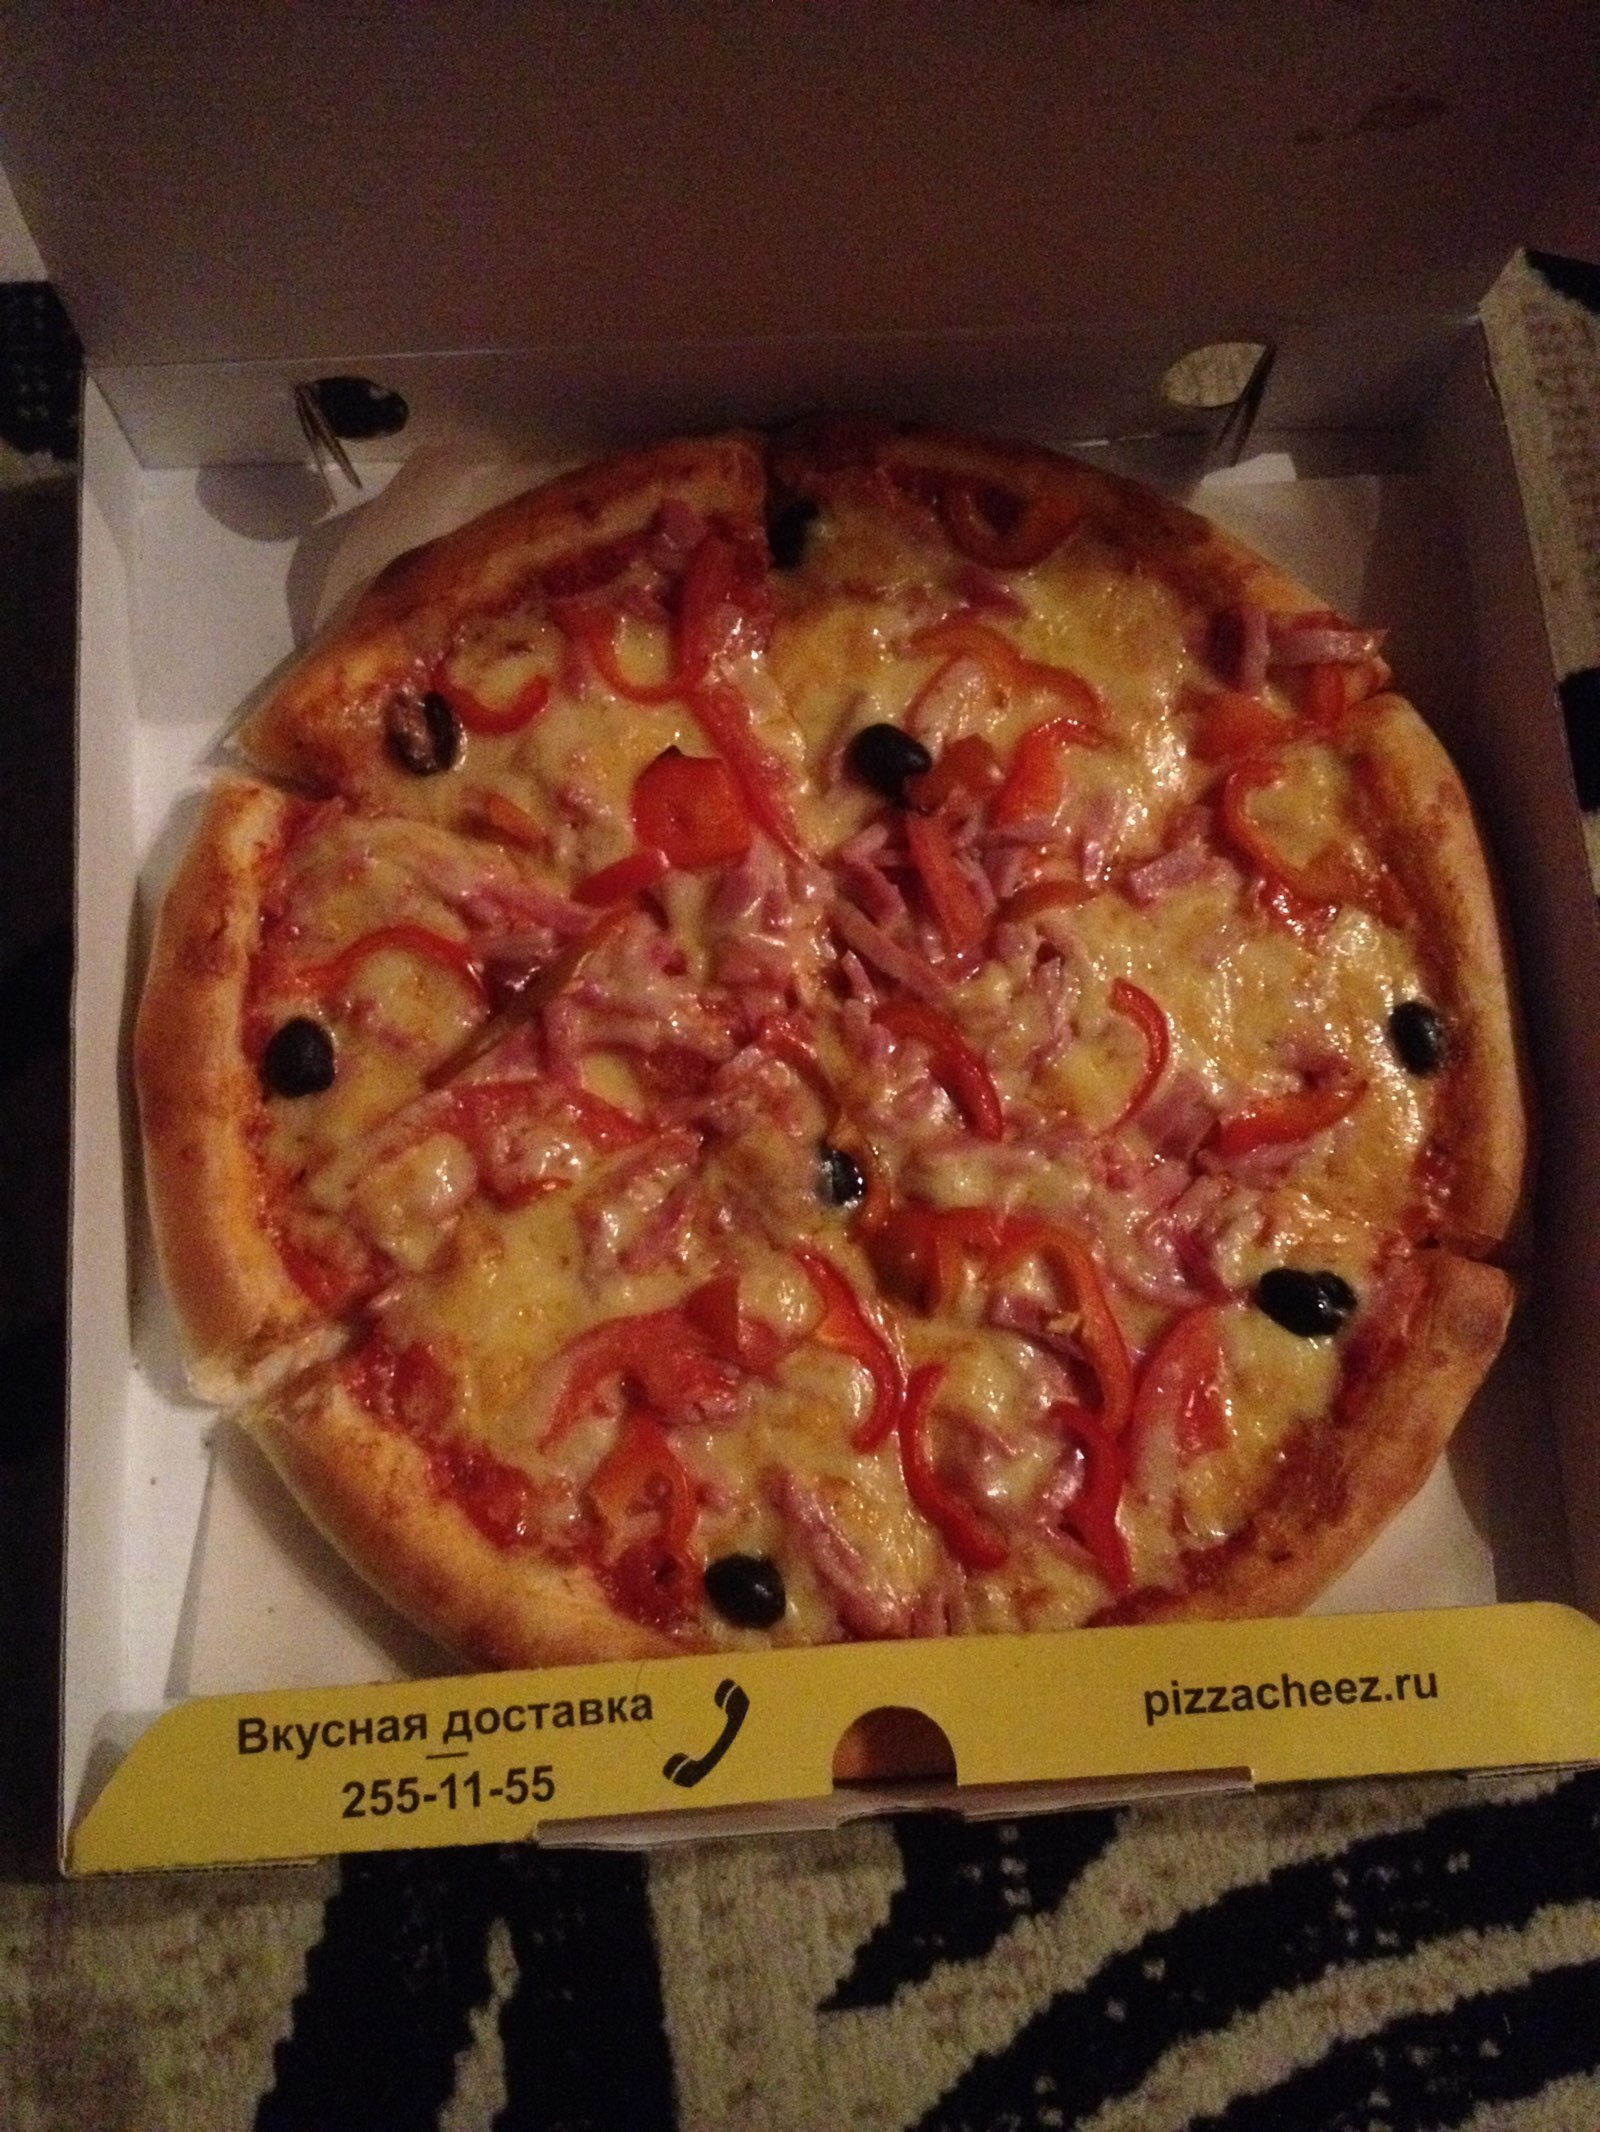 лучшая доставка пиццы в красноярске фото 6